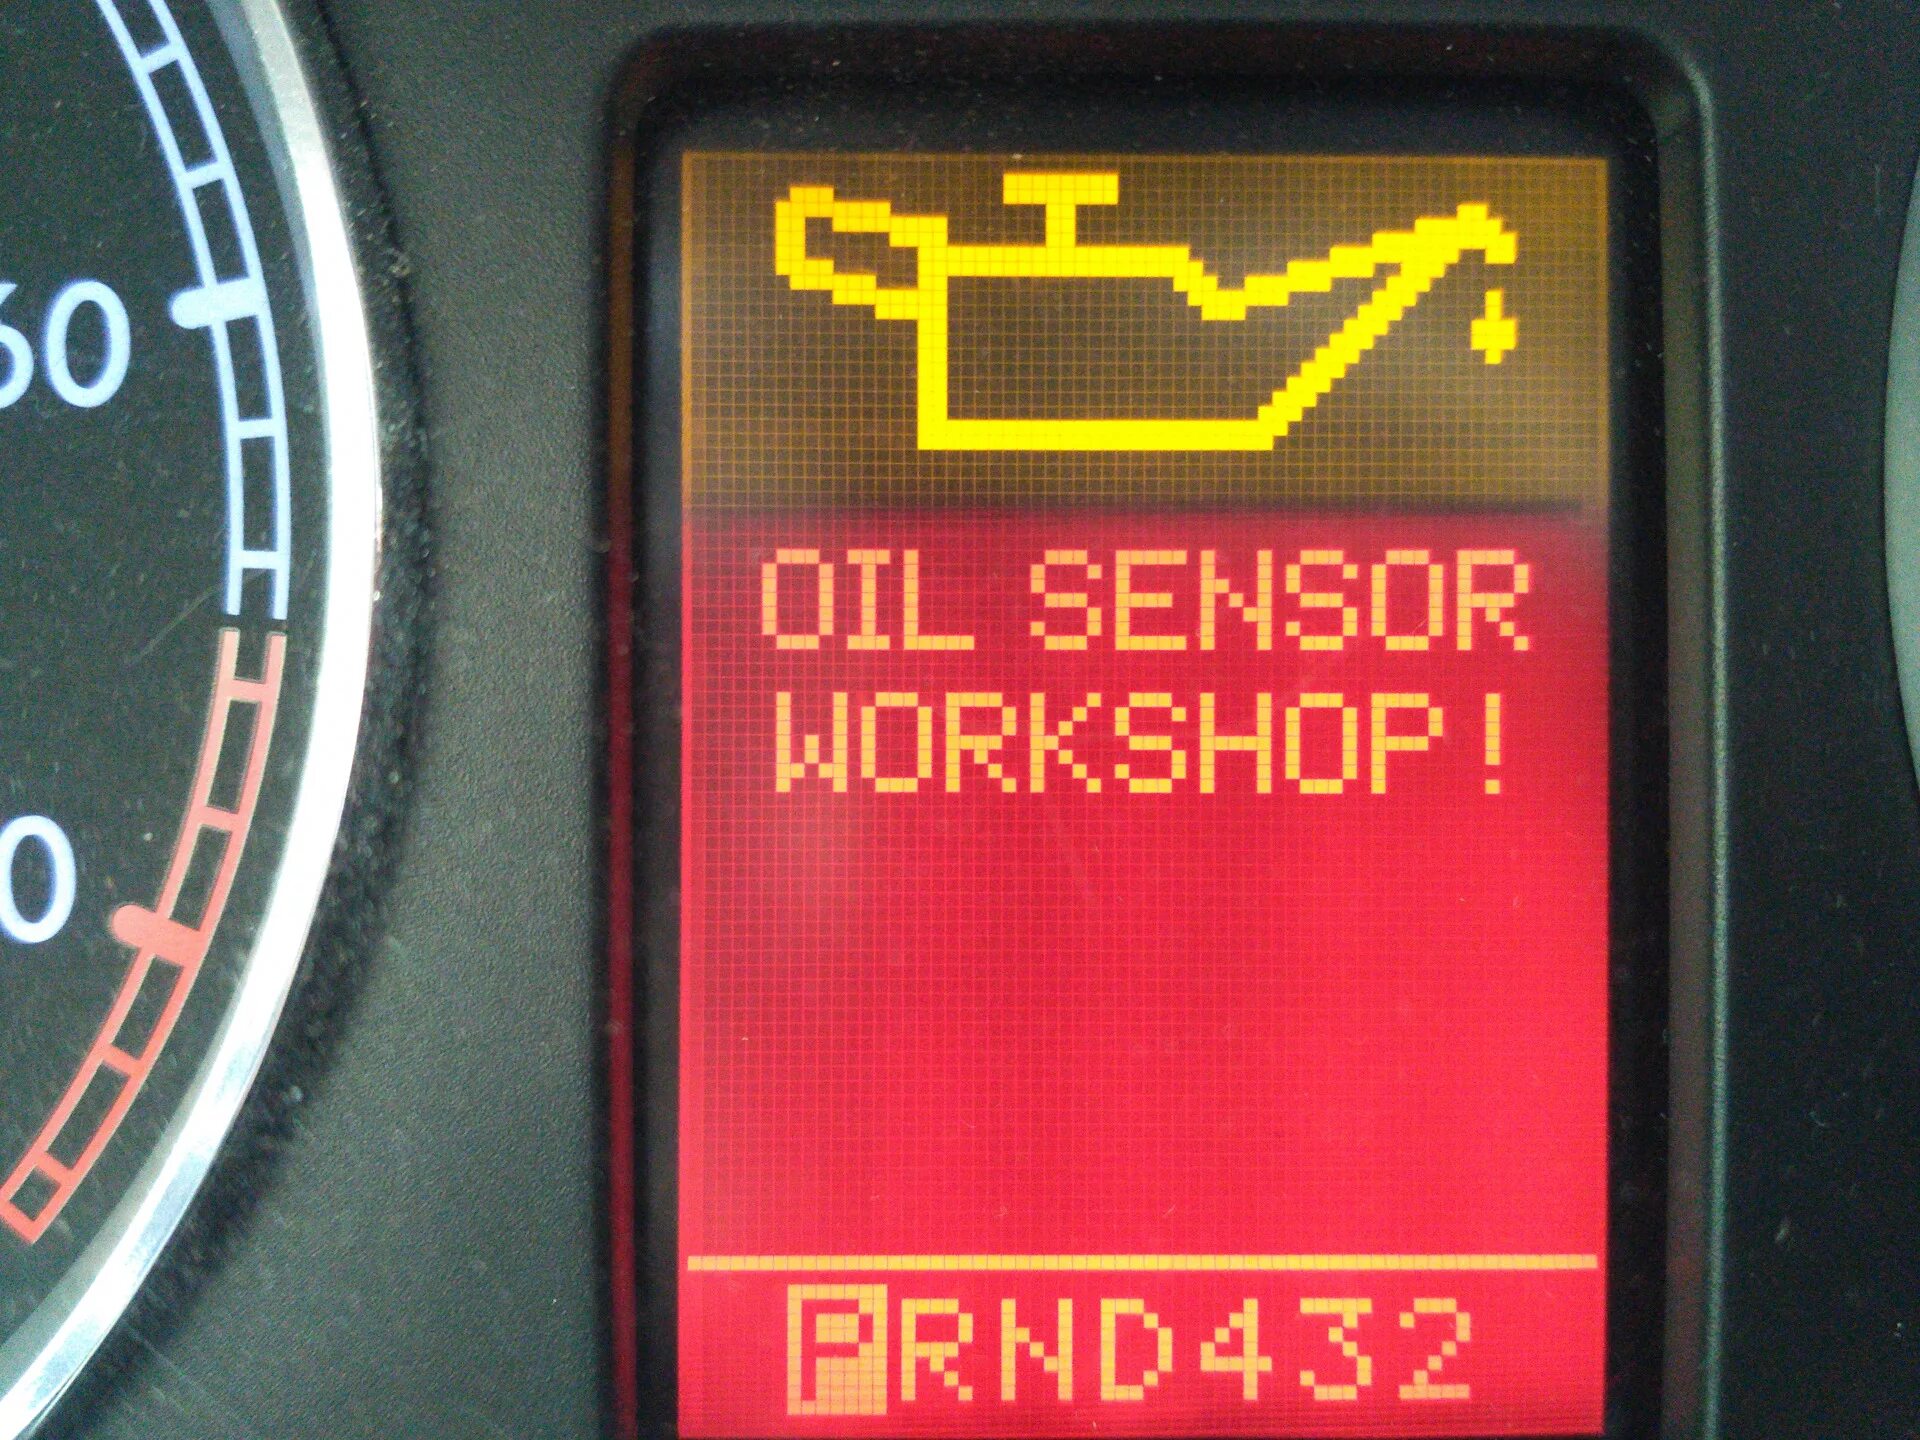 Желтая масленка Ауди а4. Oil sensor Workshop Passat b6. Желтая масленка sensor Ауди а4 б6. Желтая масленка Ауди а4 b6. Ошибка температура масла